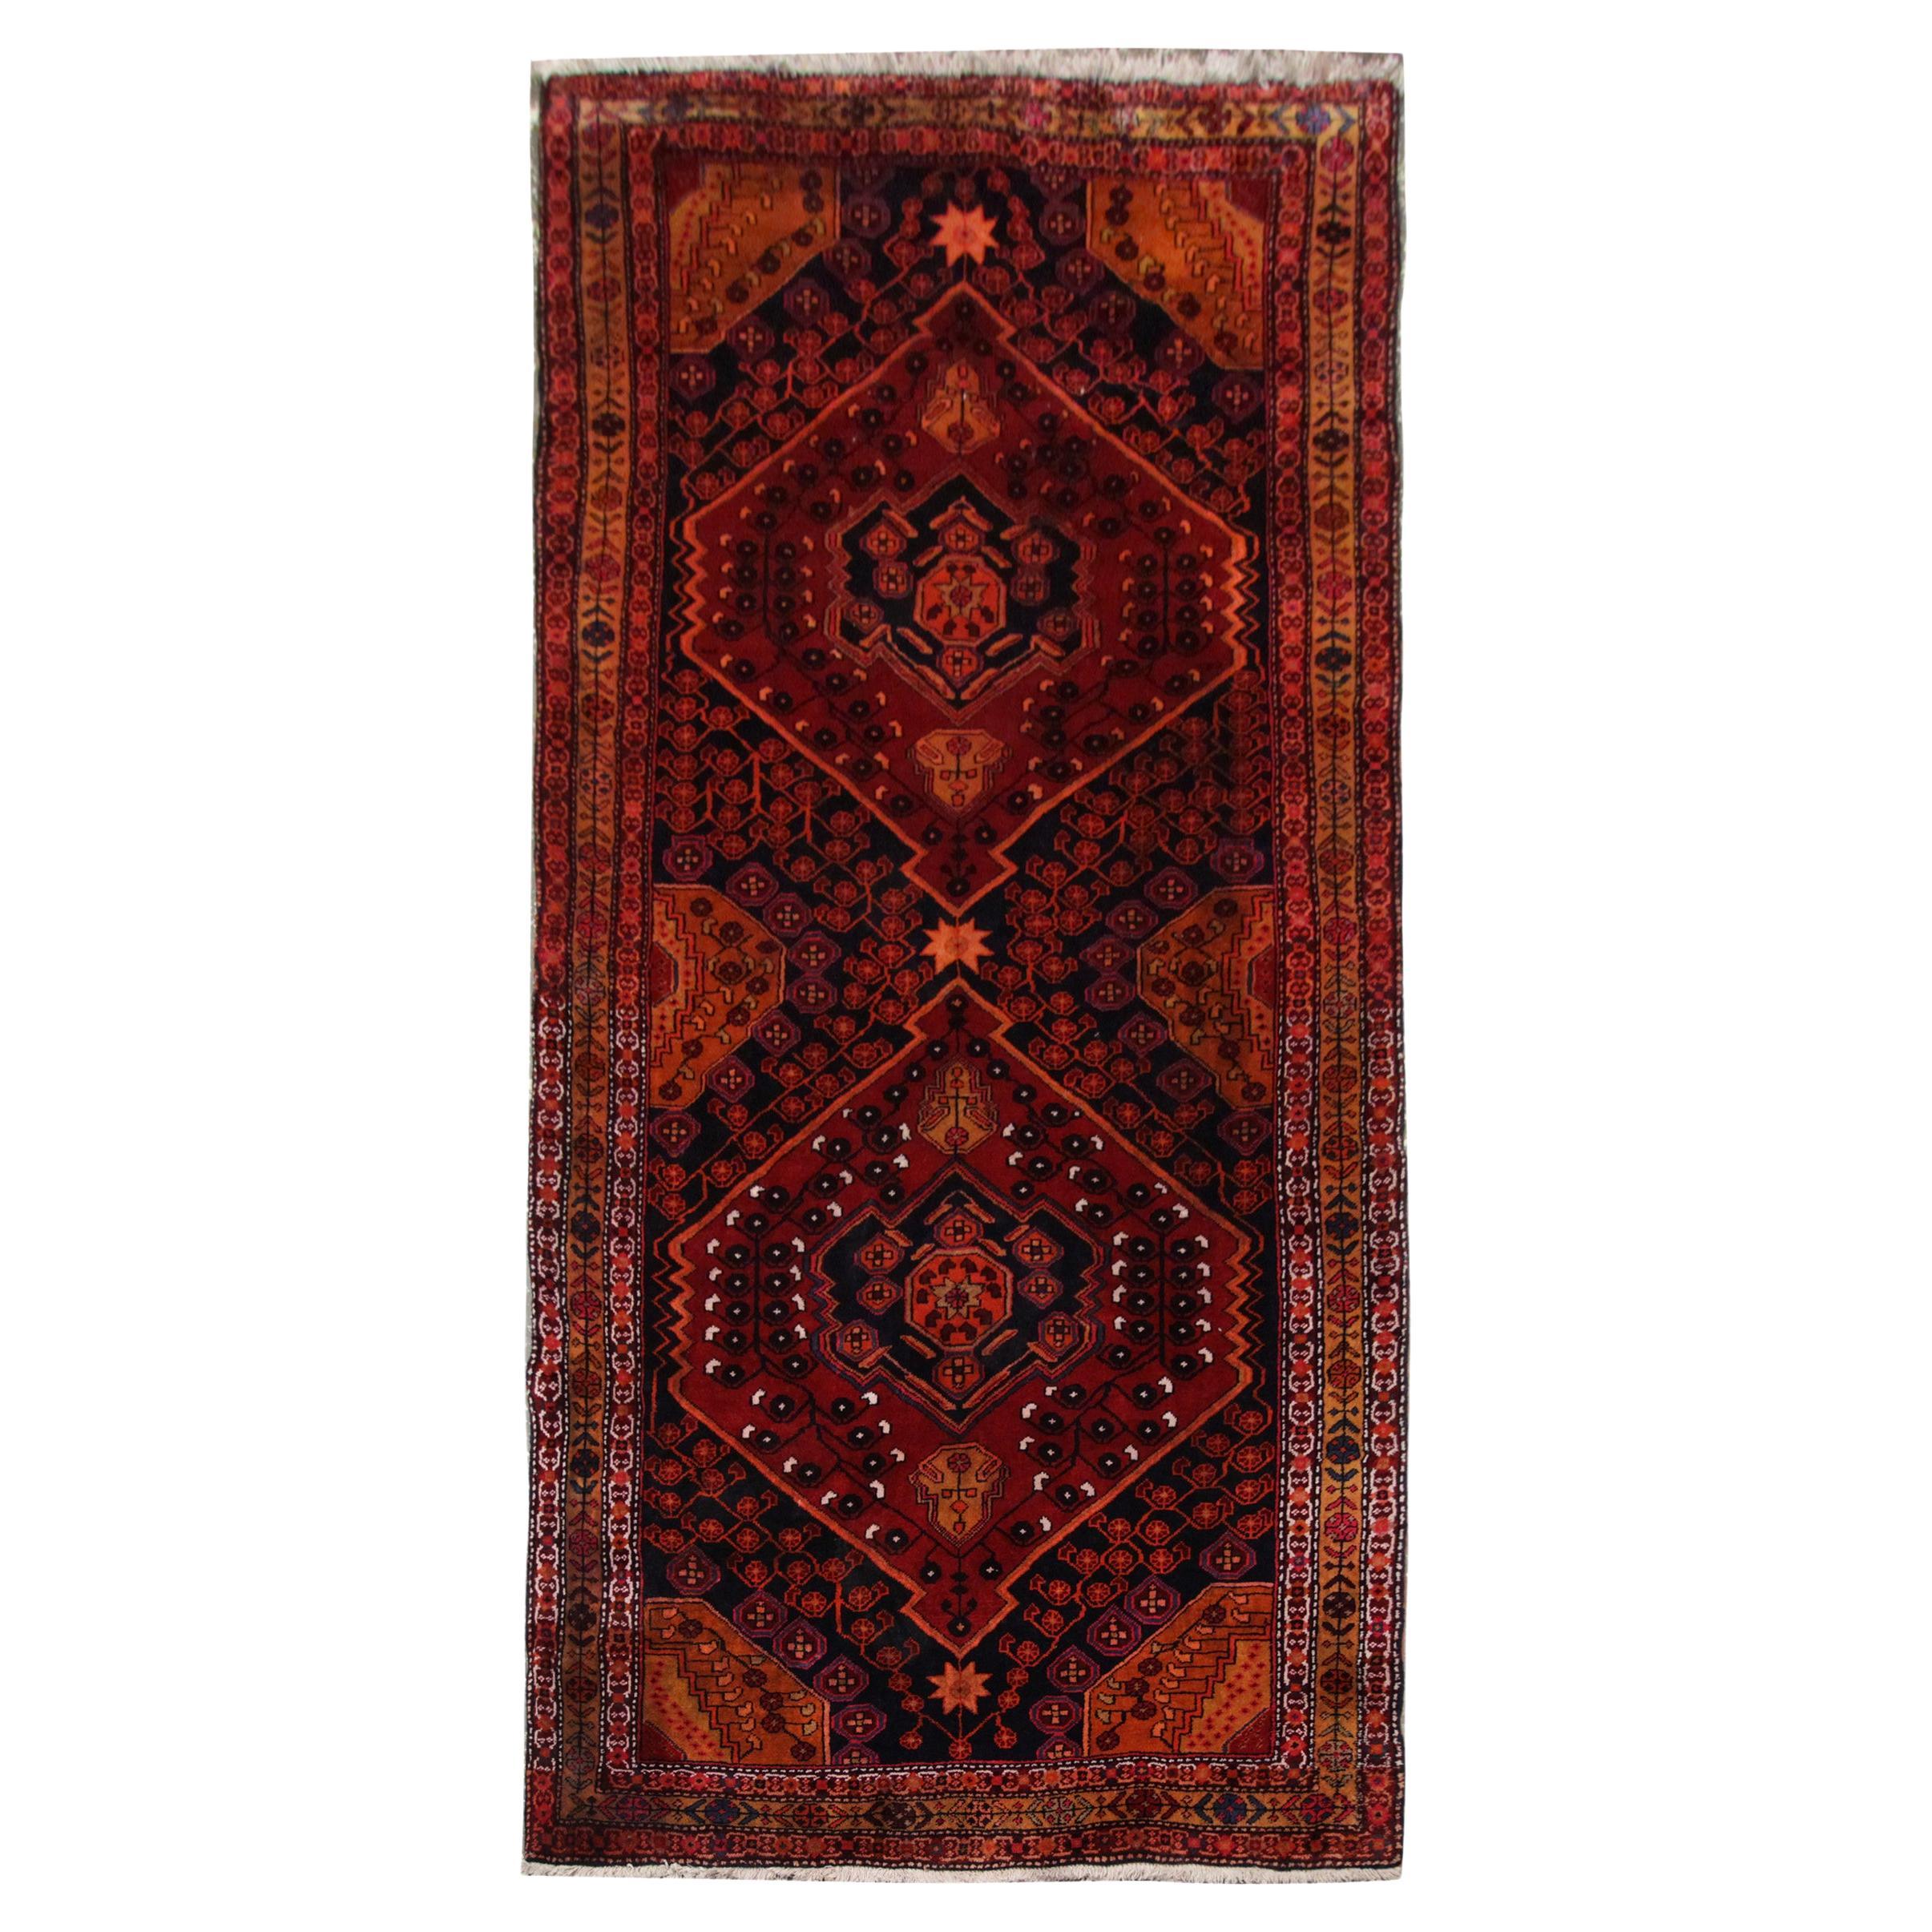 Tapis ancien, tapis artisanal du Caucase oriental, tapis de salon rustique